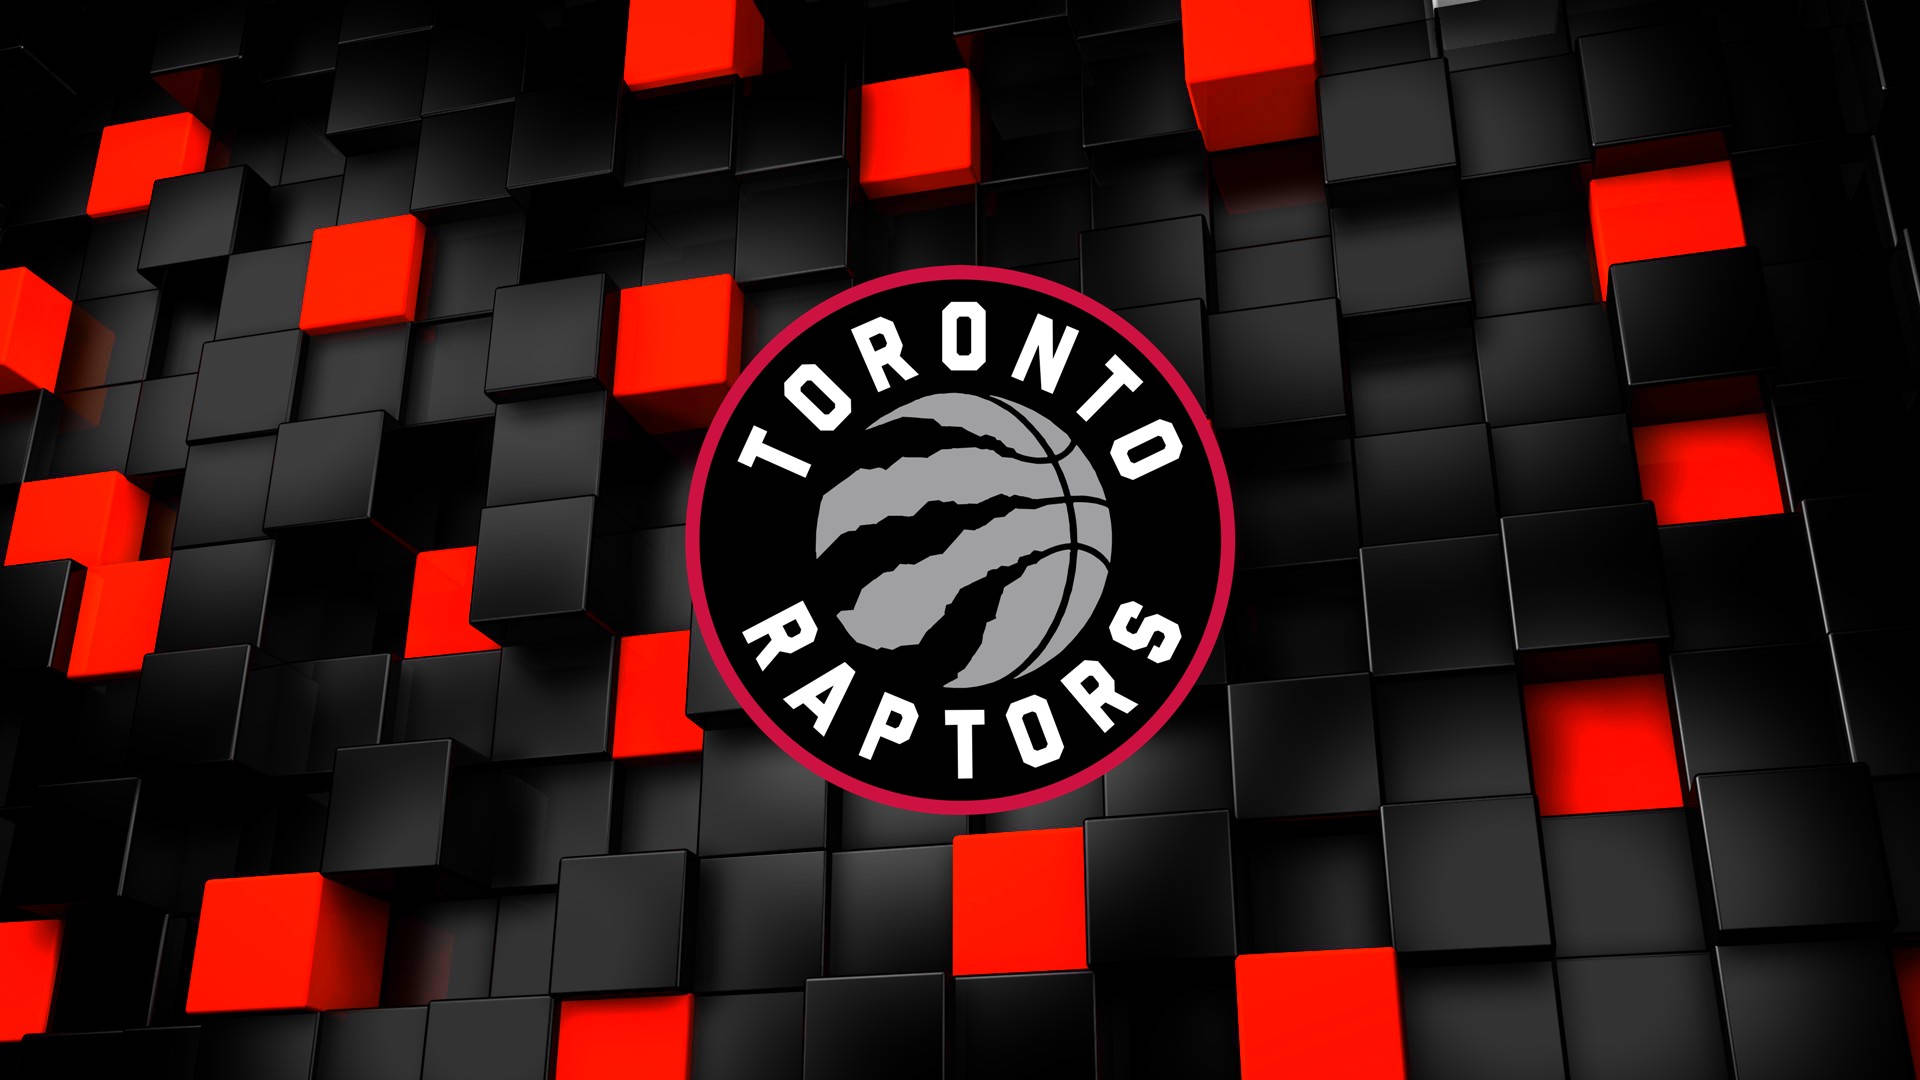 Diseñográfico De Los Toronto Raptors. Fondo de pantalla